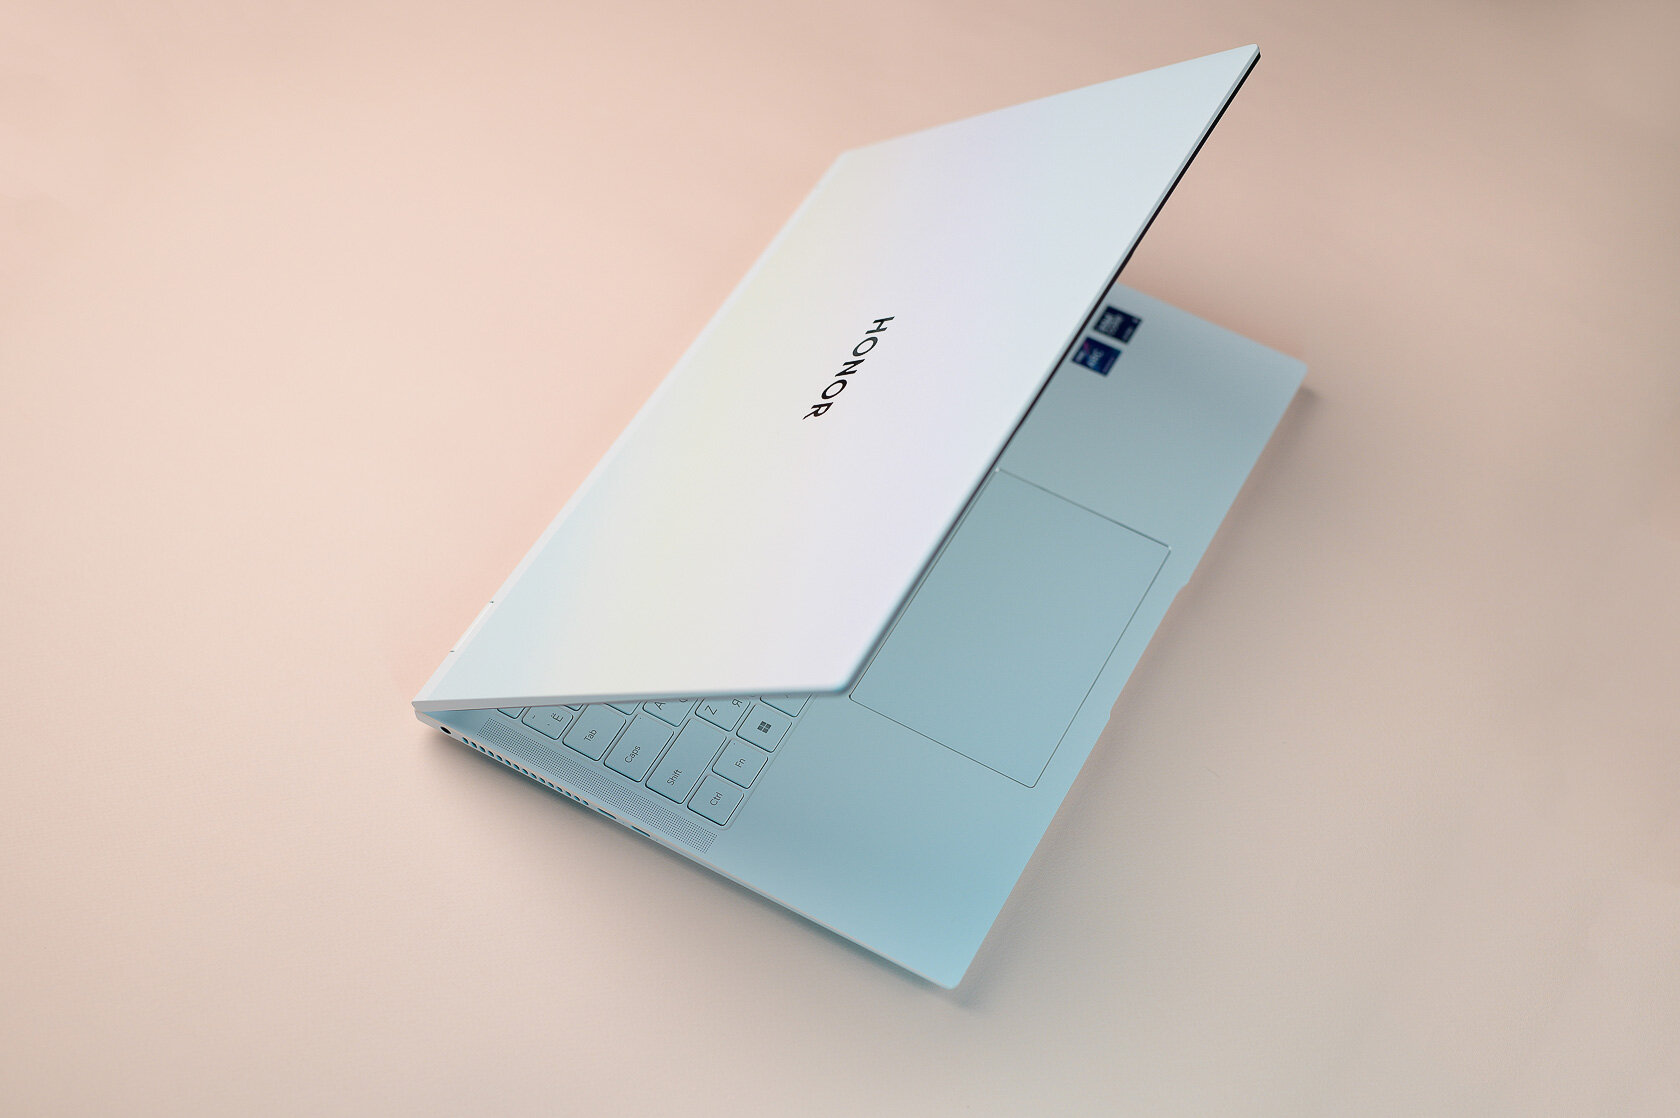 Мощный ноутбук из металла, на котором можно монтировать, играть и не только: обзор HONOR MagicBook Pro 16